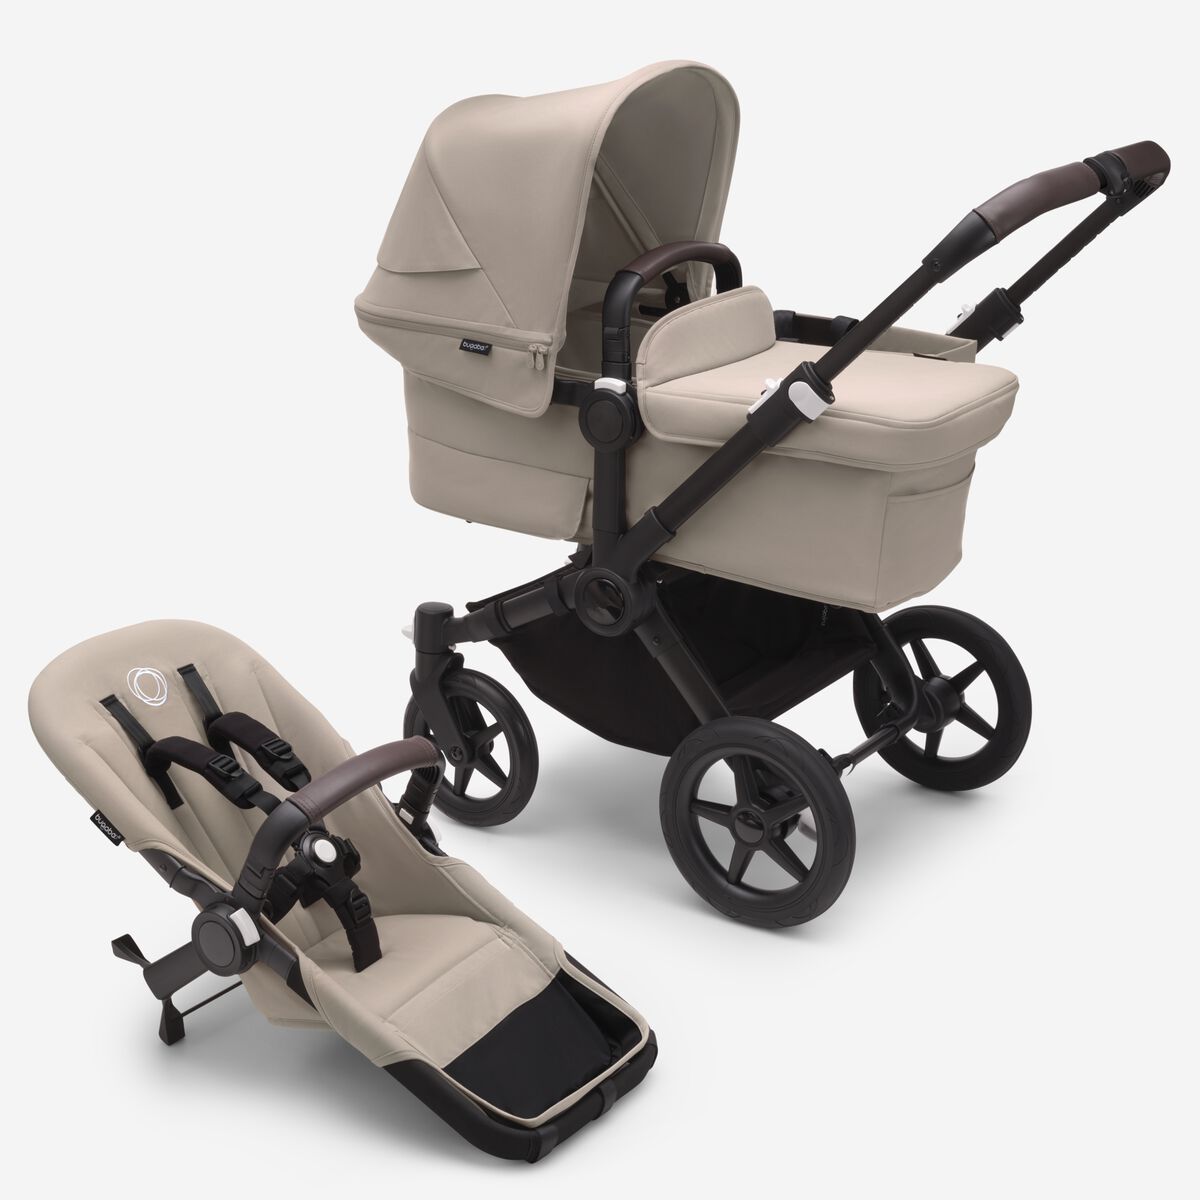 Carros de bebé - Tienda online de carros de bebé y carros para gemelos.